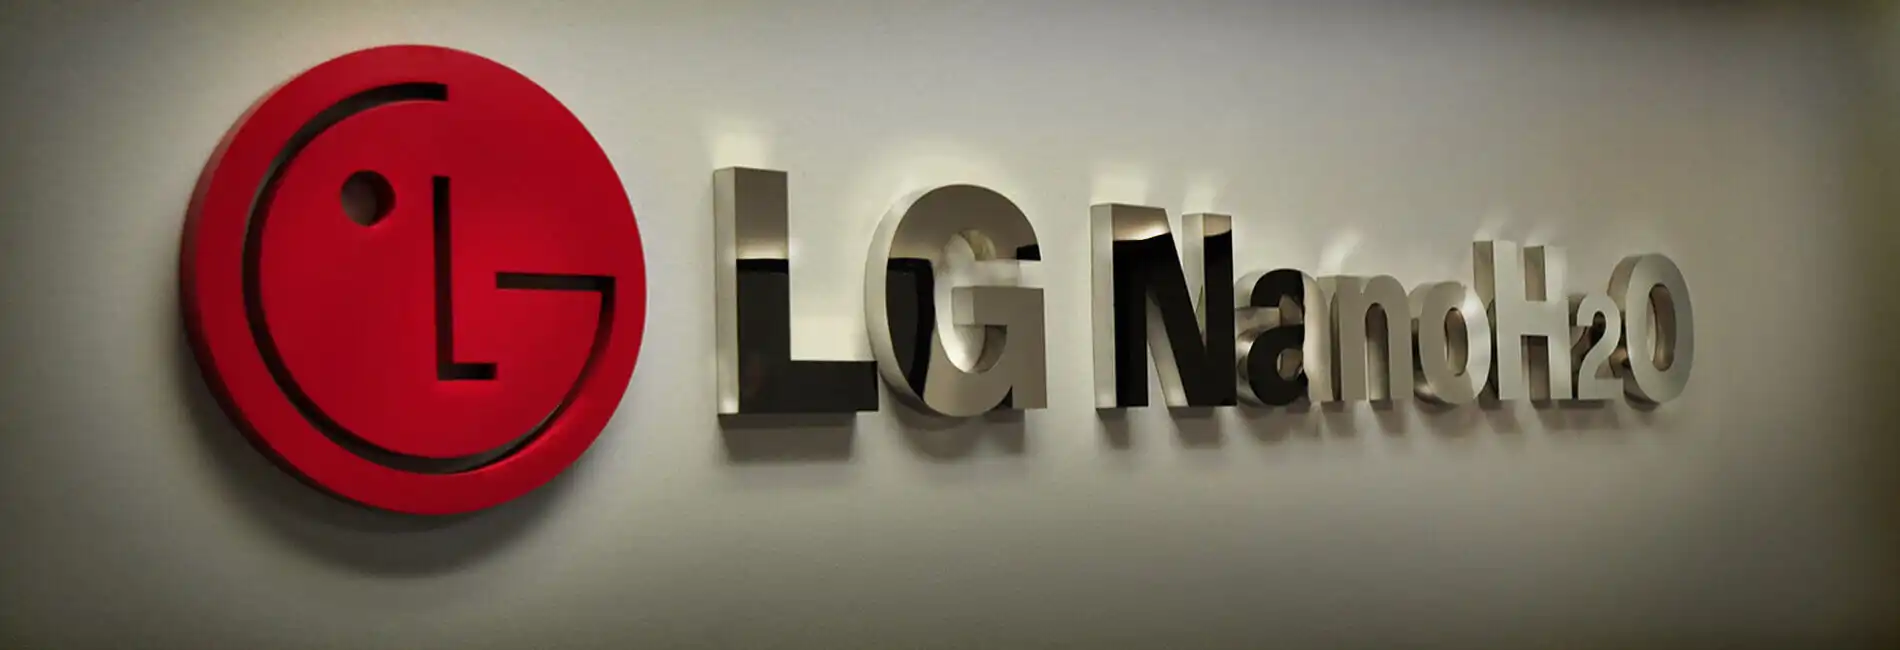 Custom 3D letters LG Logo in stainless steel